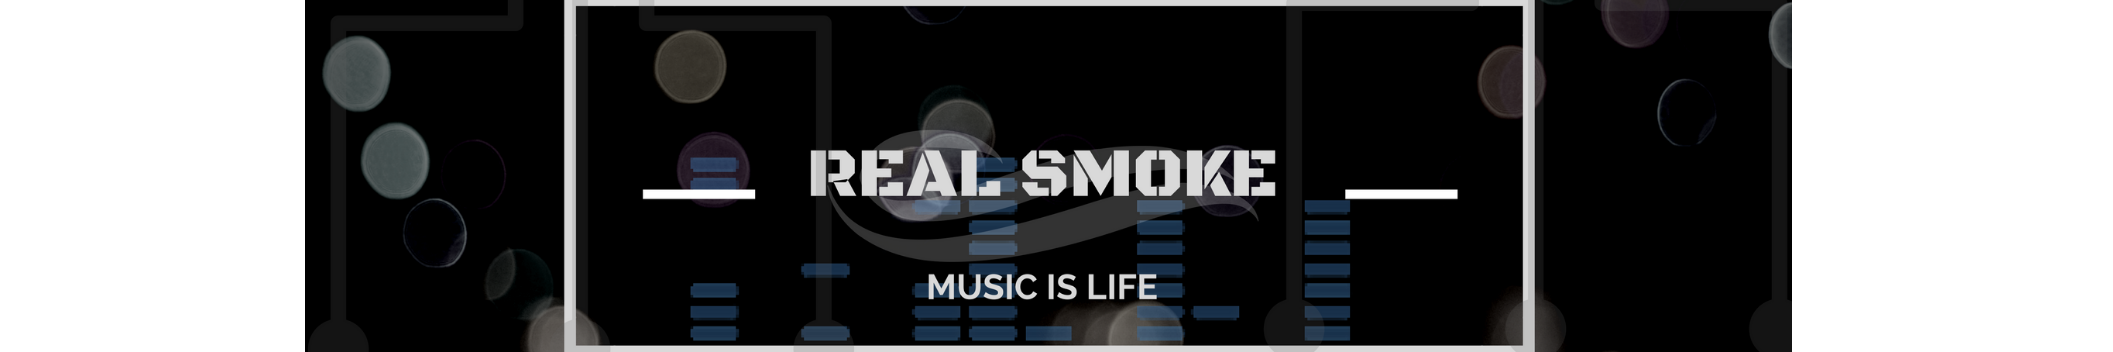 Real smoke